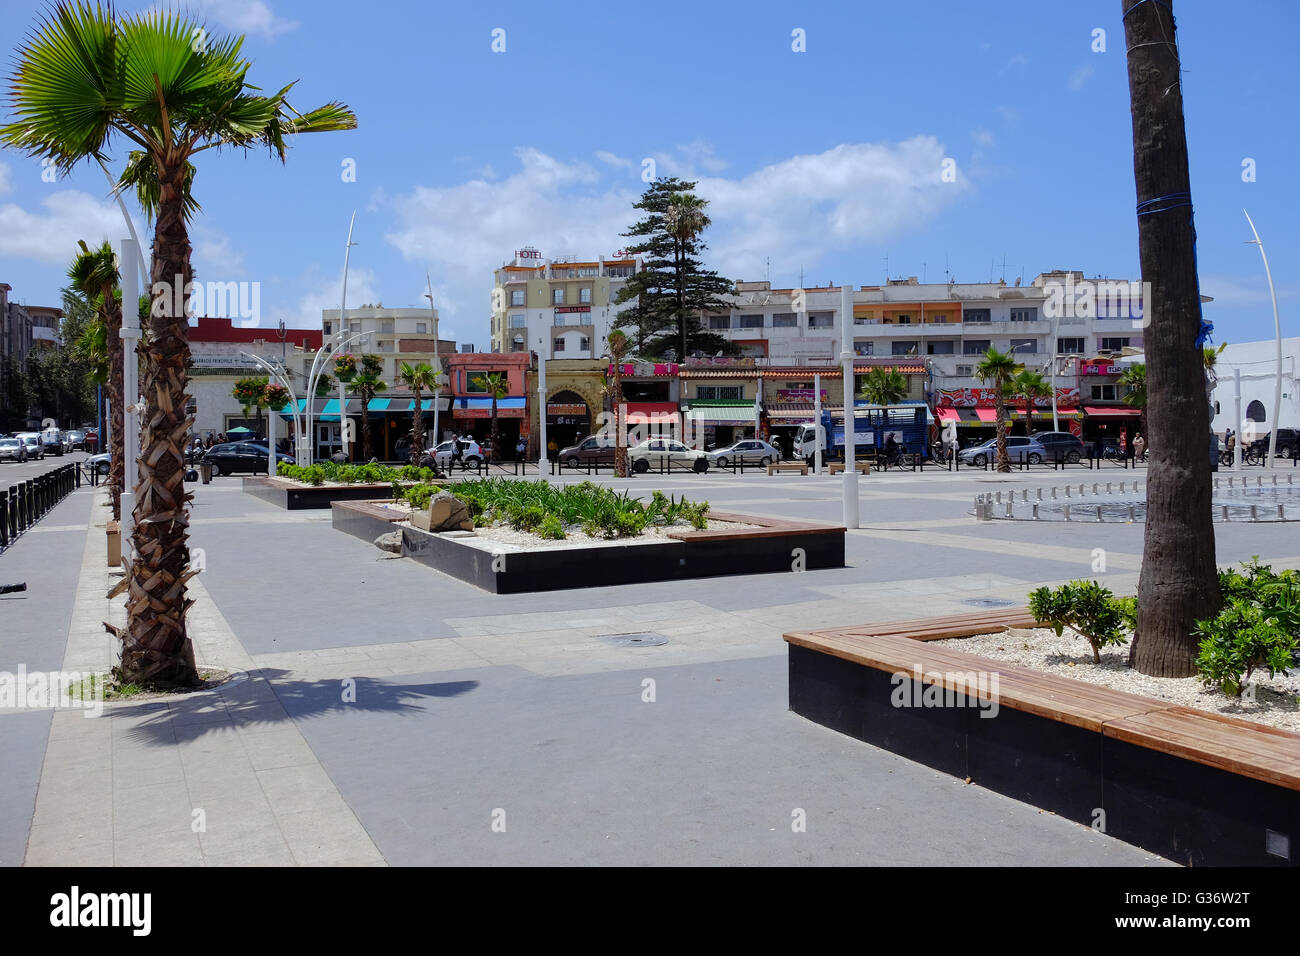 Le centre moderne de la ville marocaine d'El Jadida, Maroc Banque D'Images